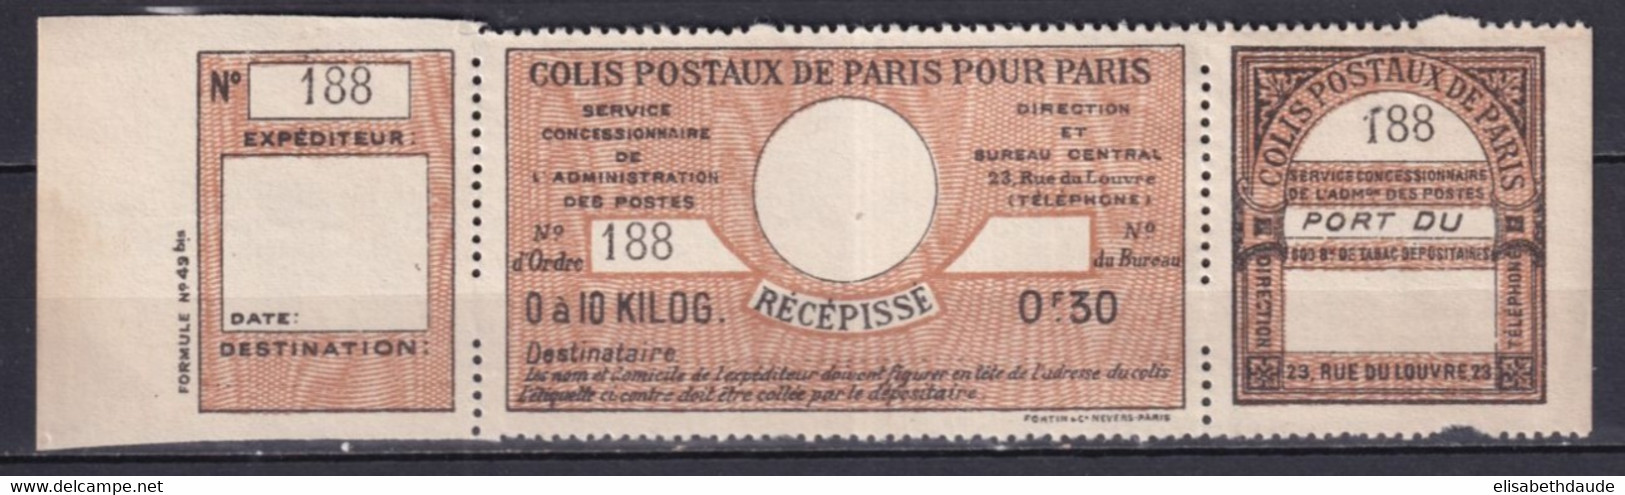 COLIS POSTAUX PARIS POUR PARIS  - 1917 - MAURY N°42 (*) NSG RARE COMPLET ! - COTE 2009 = 150 EUR. - Neufs